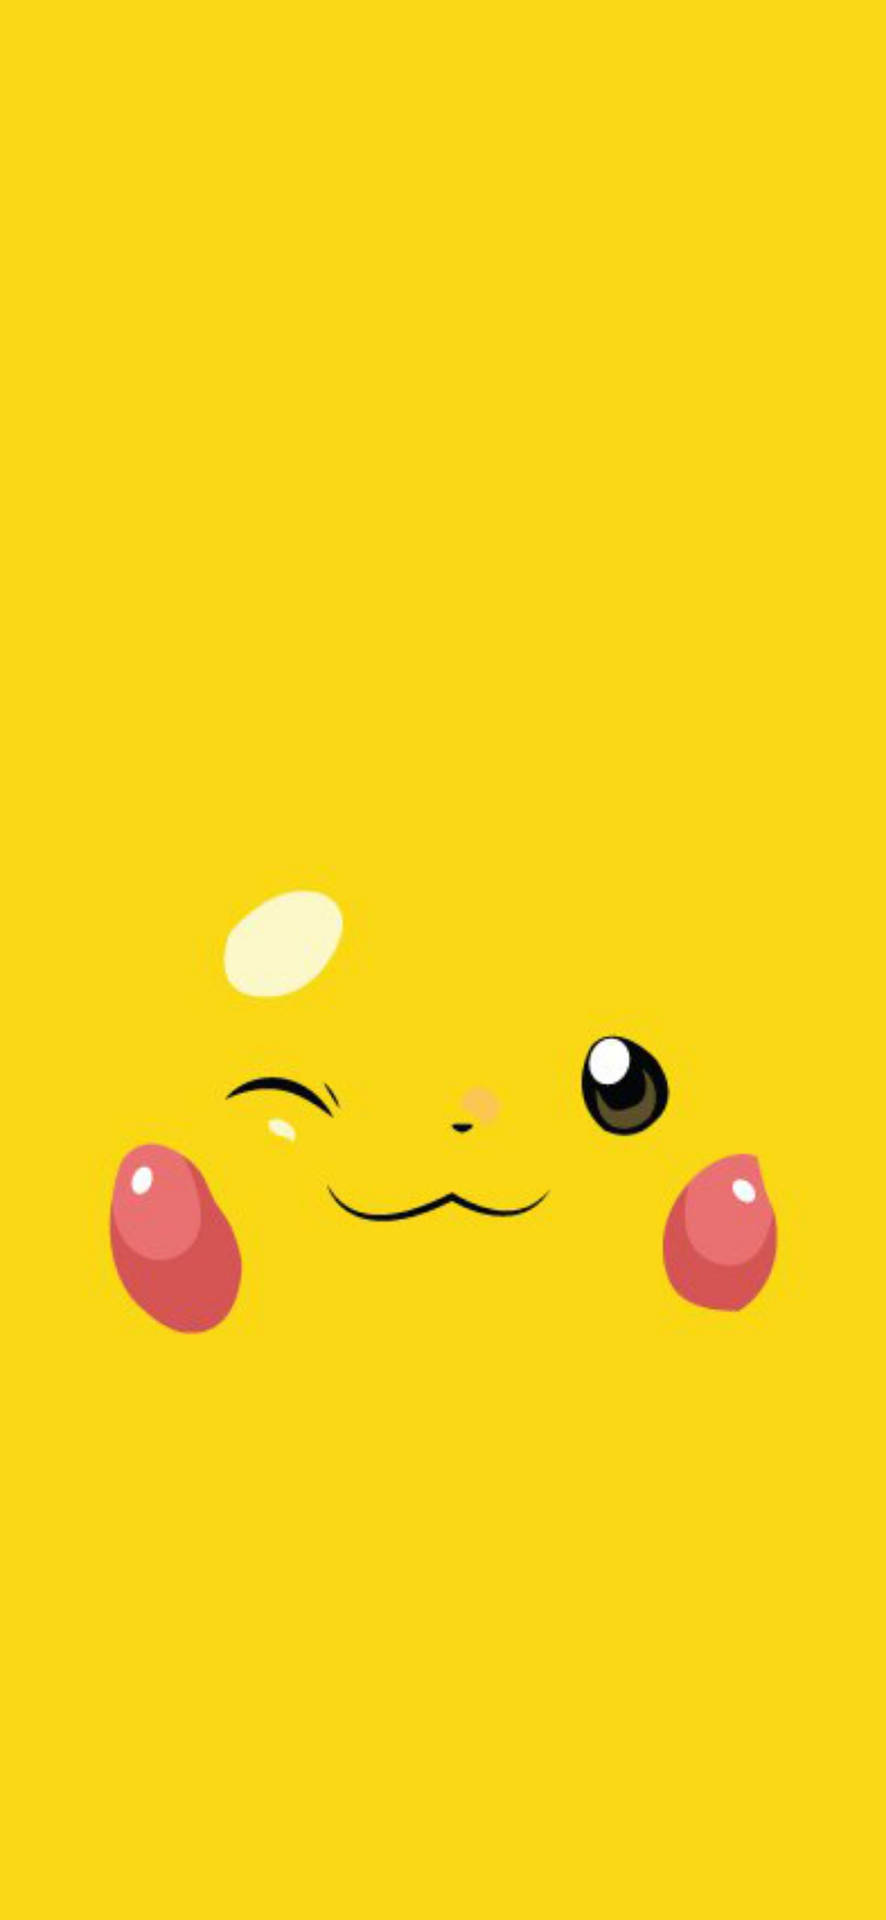 999 Hình Nền Pokemon 3d Đẹp GỢI NHỚ TUỔI ẤU THƠ